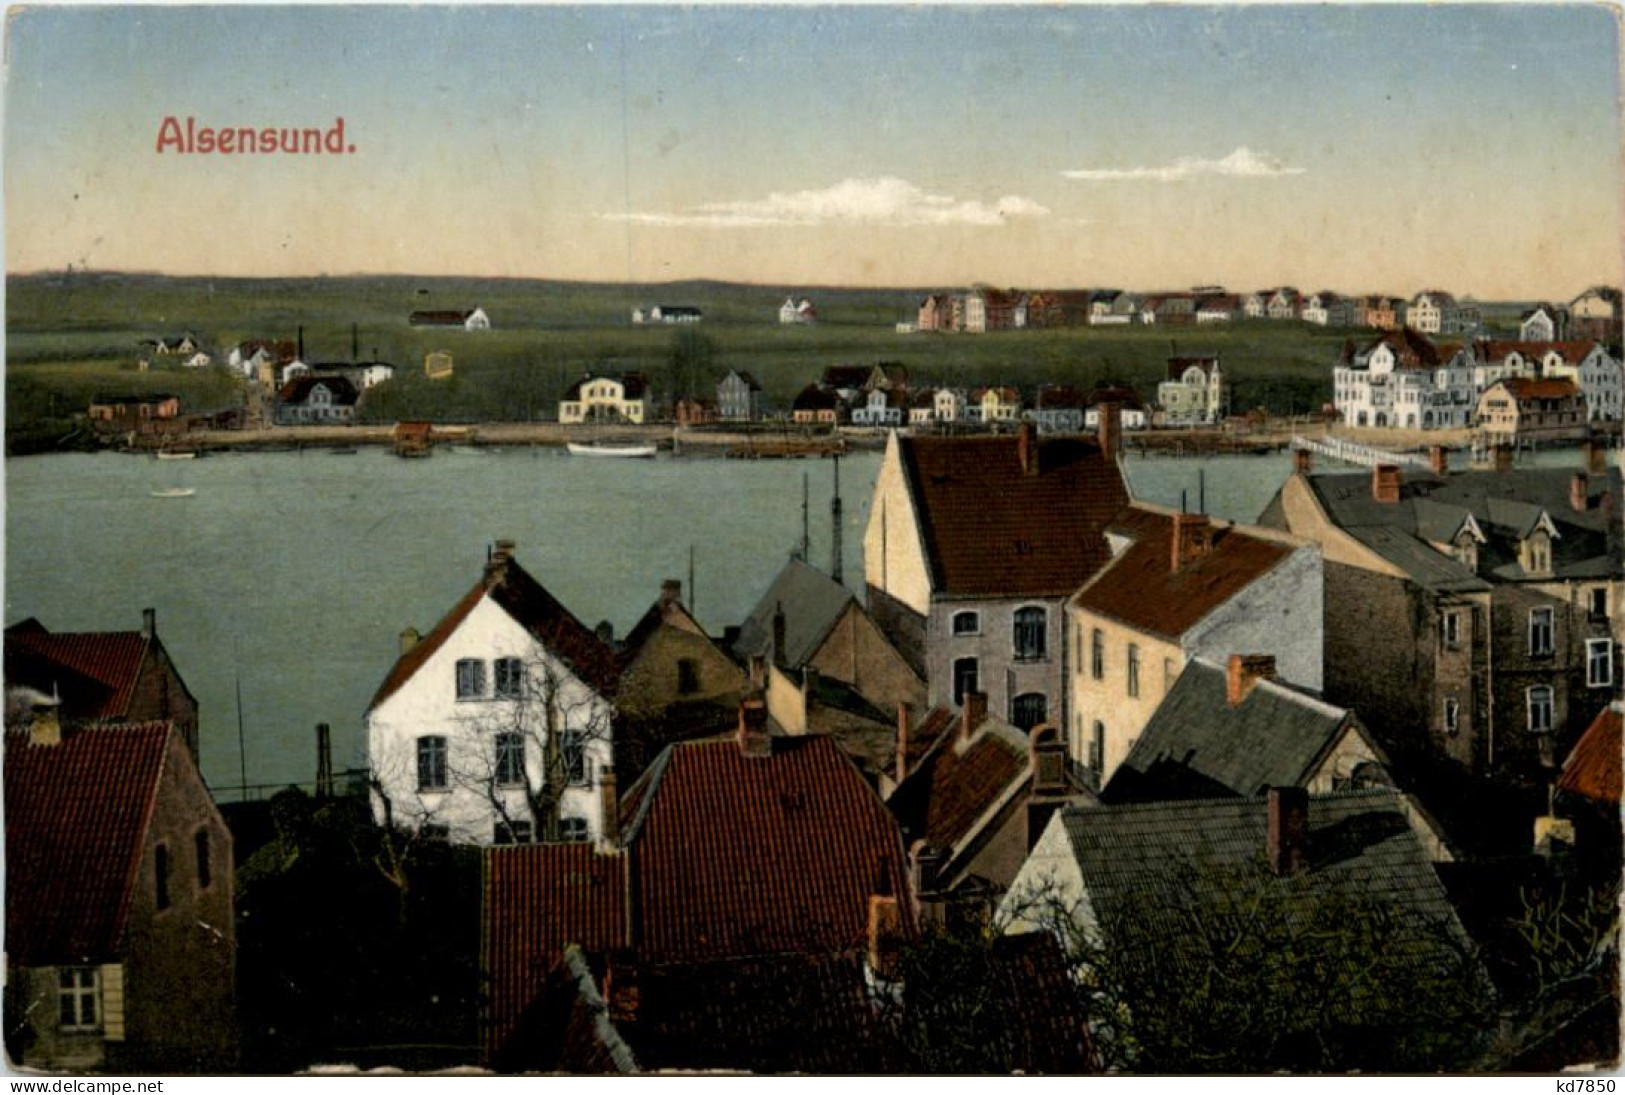 Alsensund - Denmark